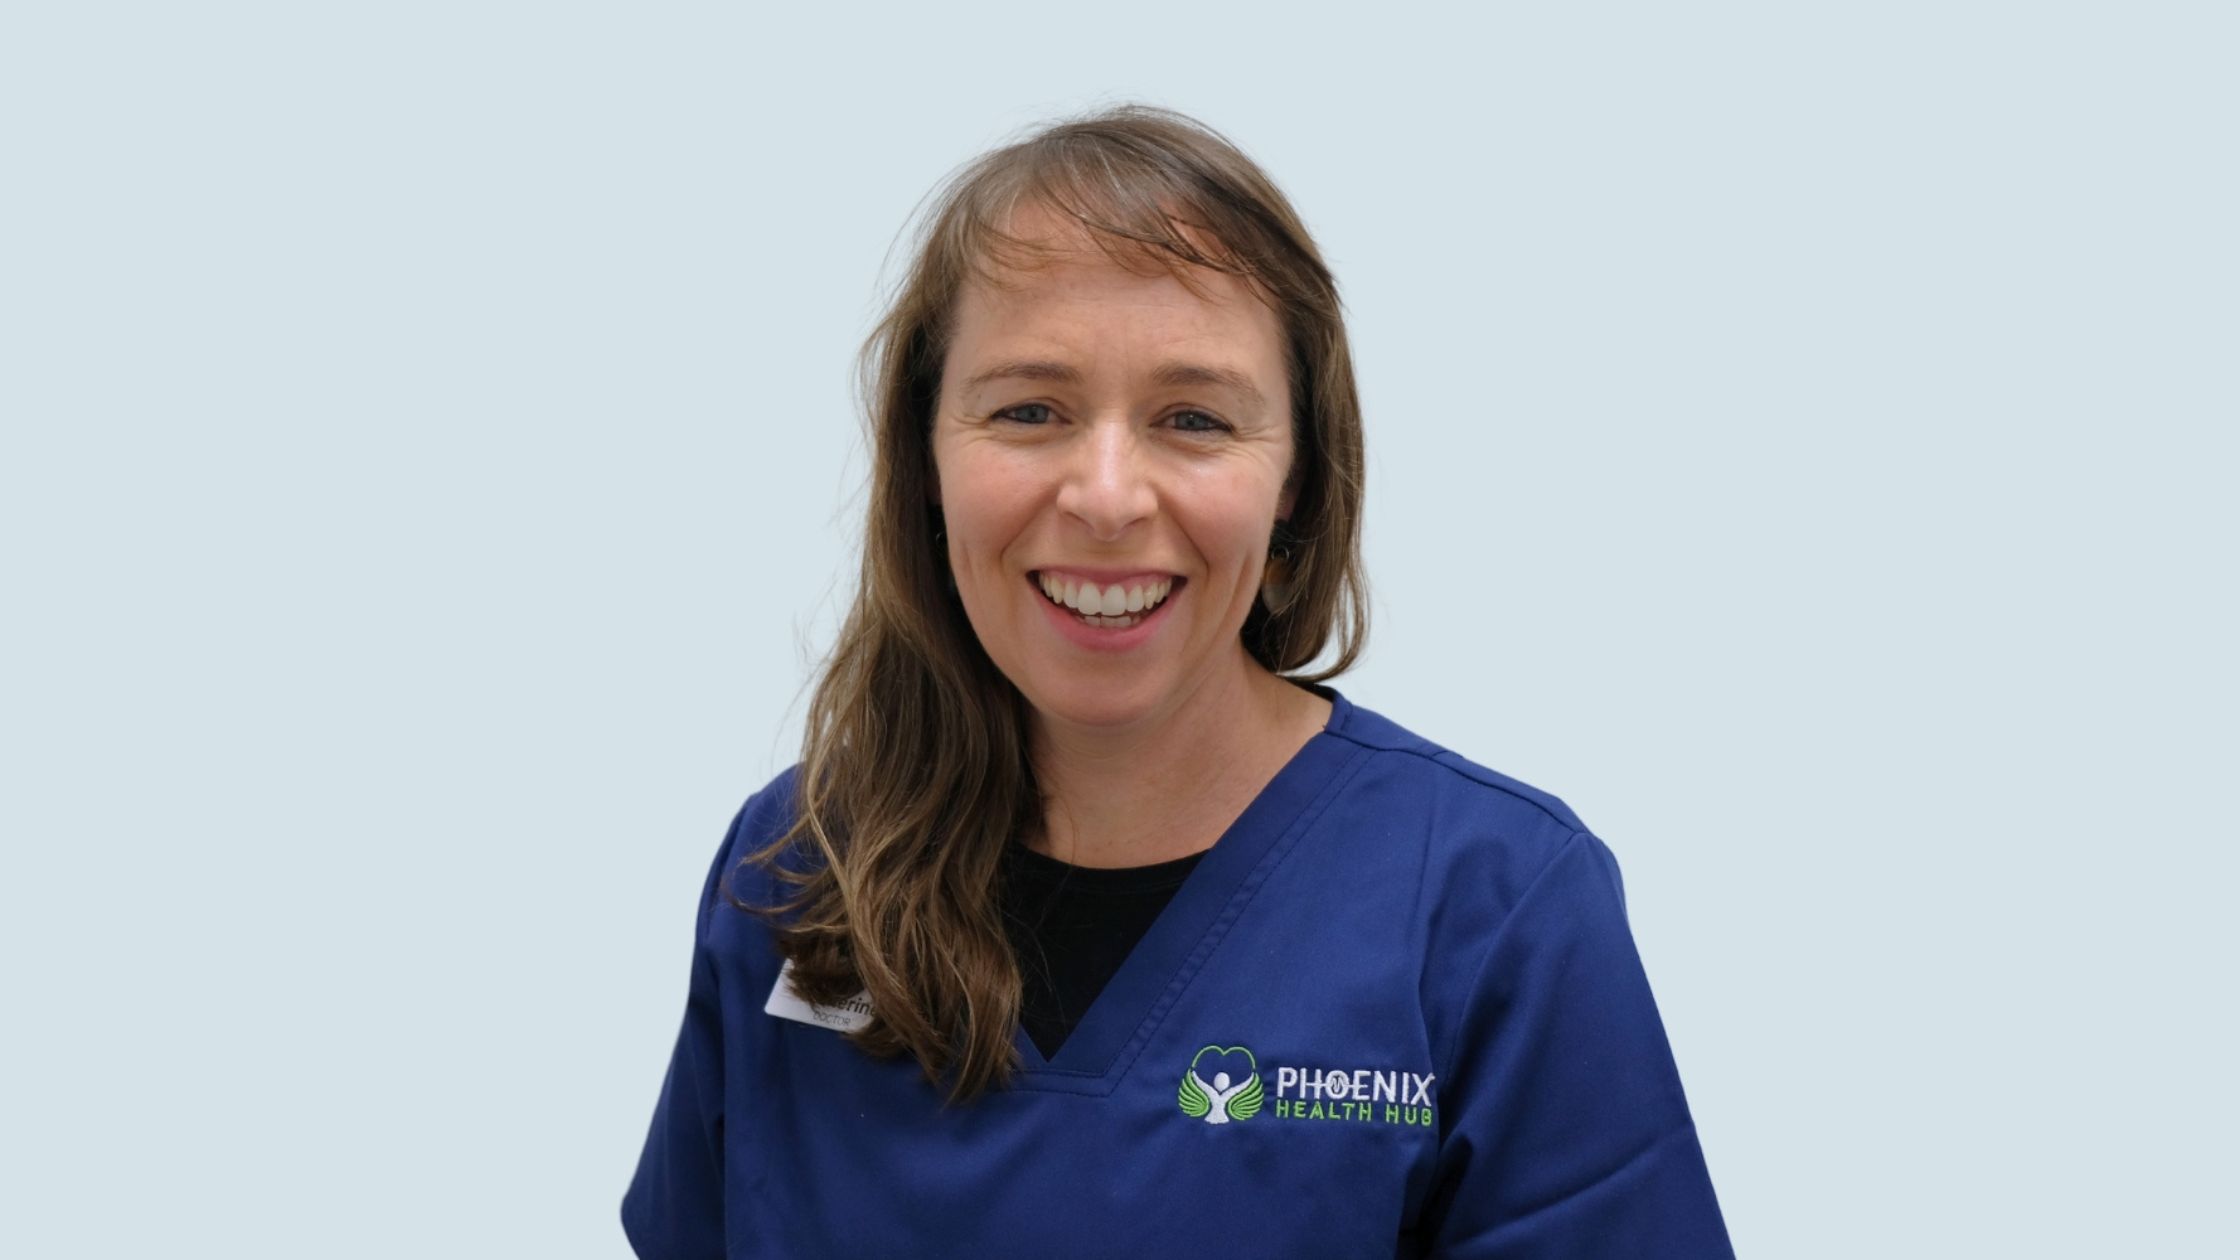 Dr Catherine Helms of Phoenix Healthcare